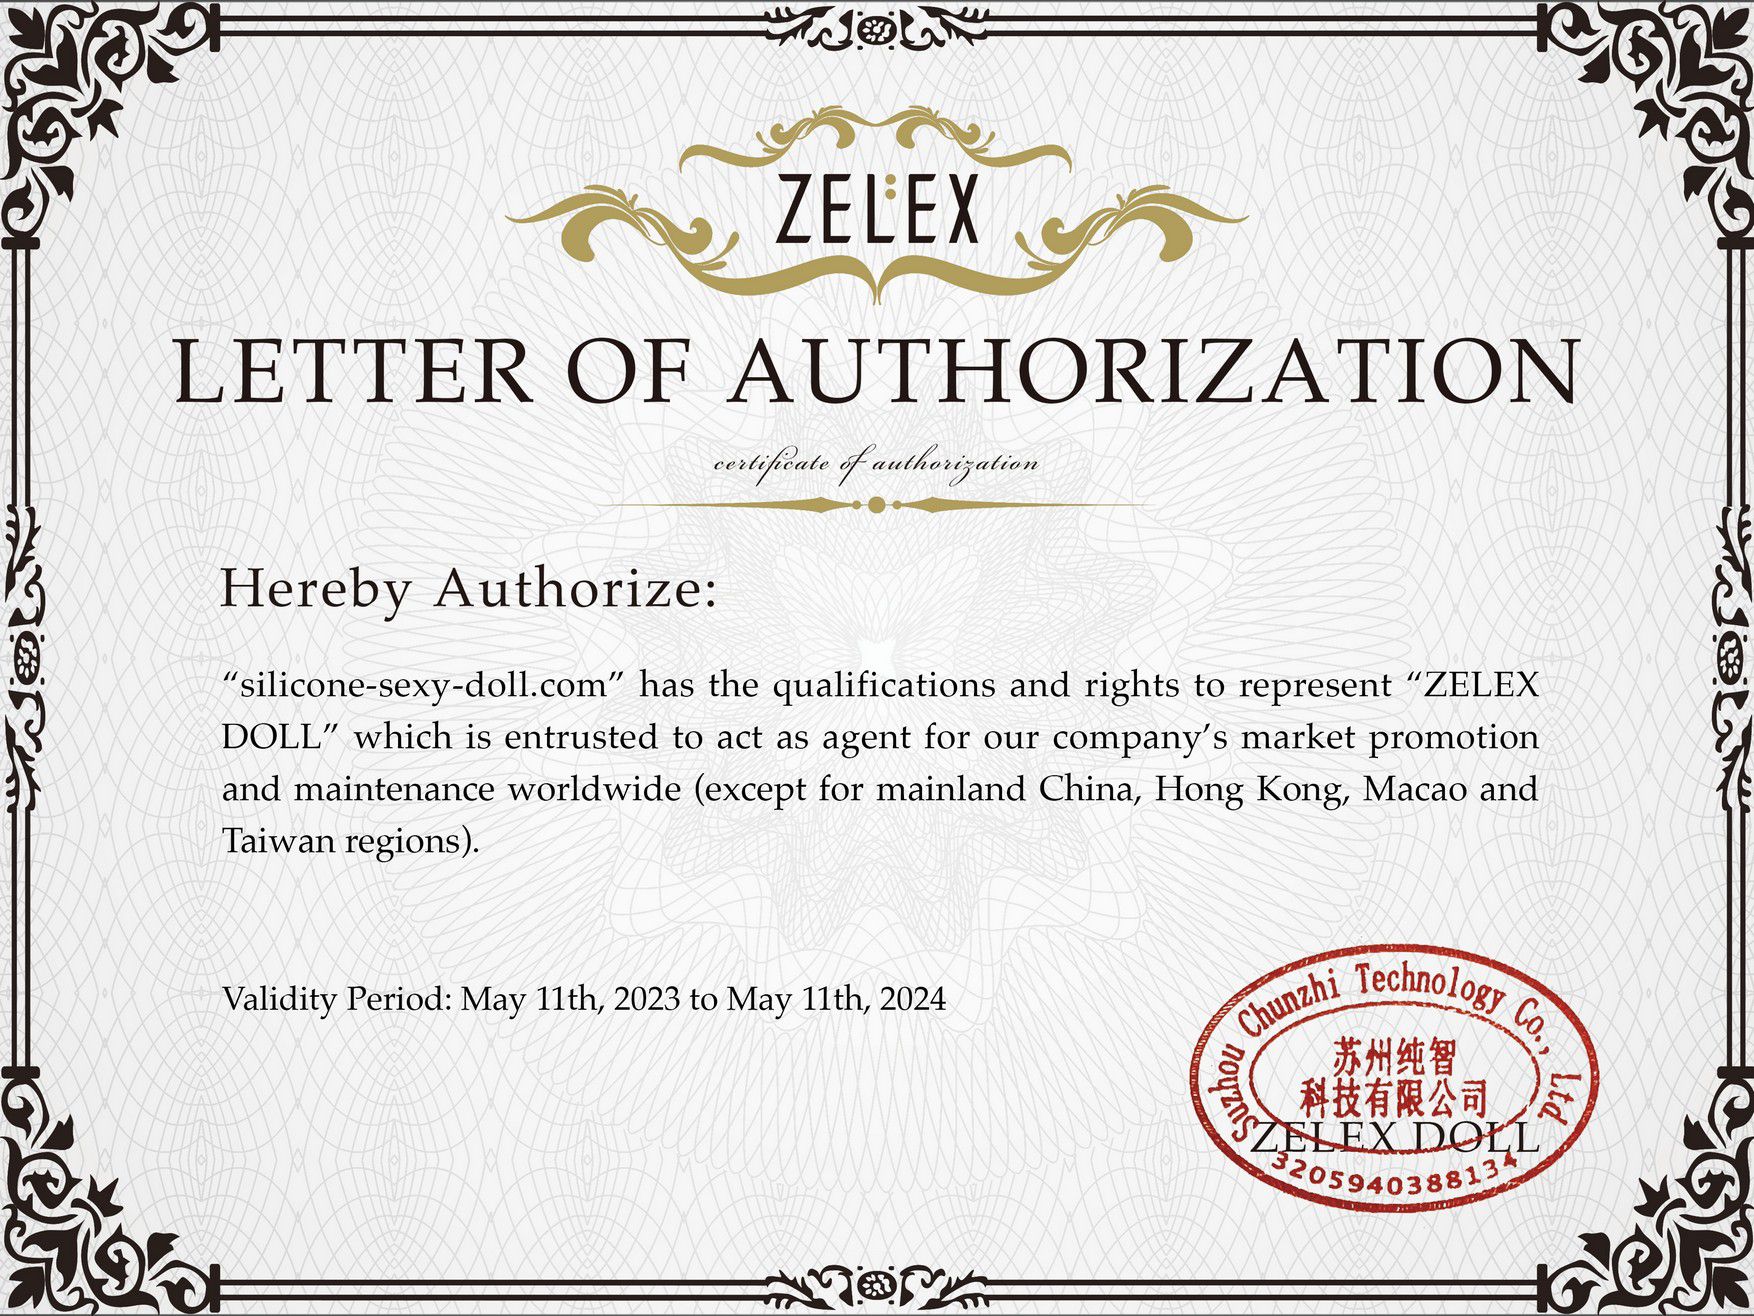 Zelex Doll Certificate